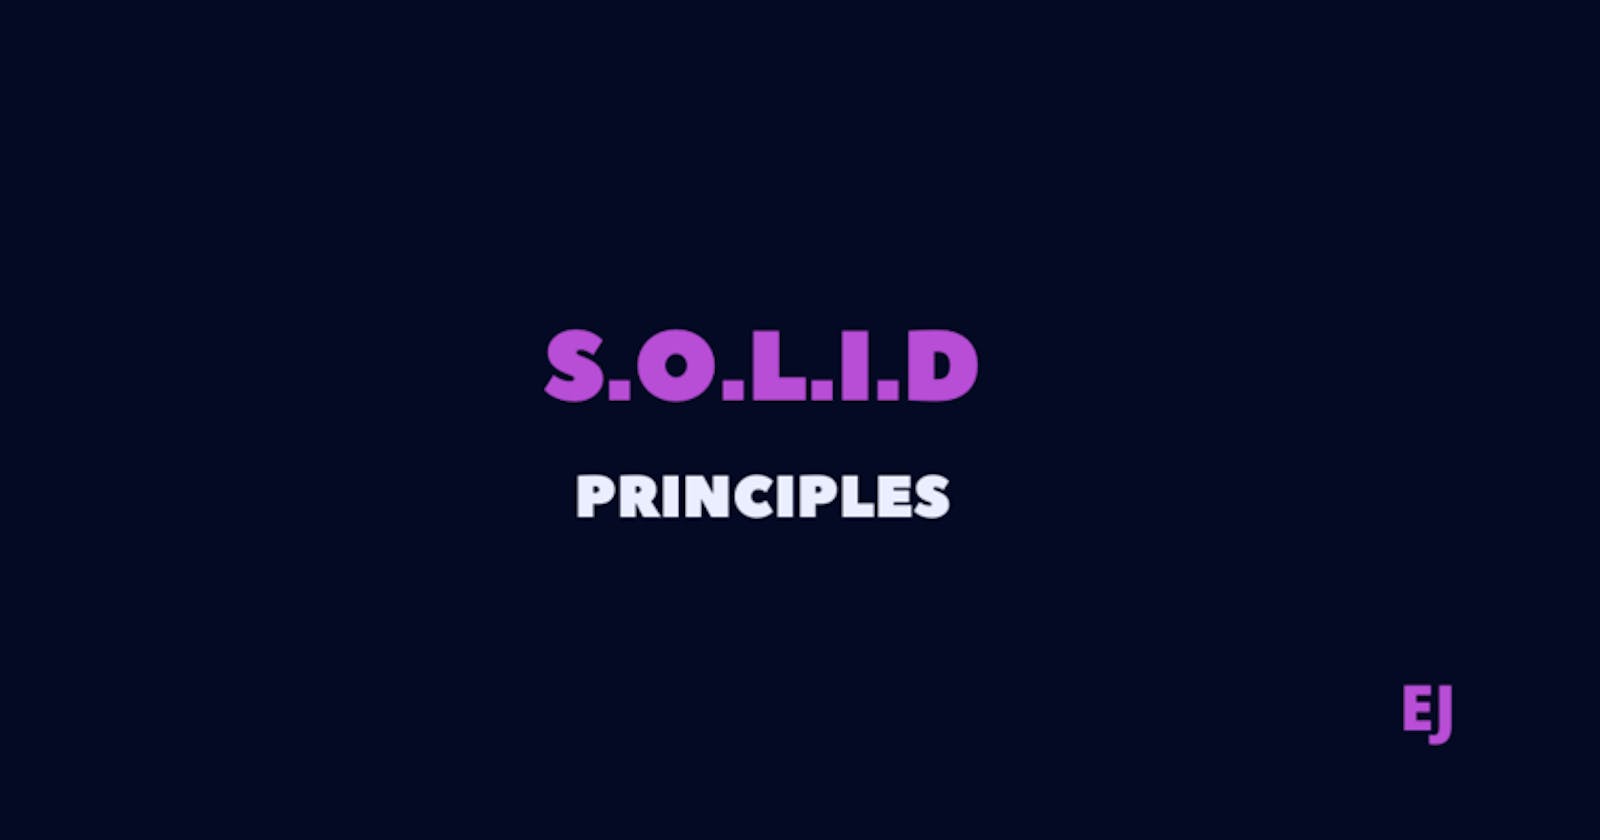 Solid principles